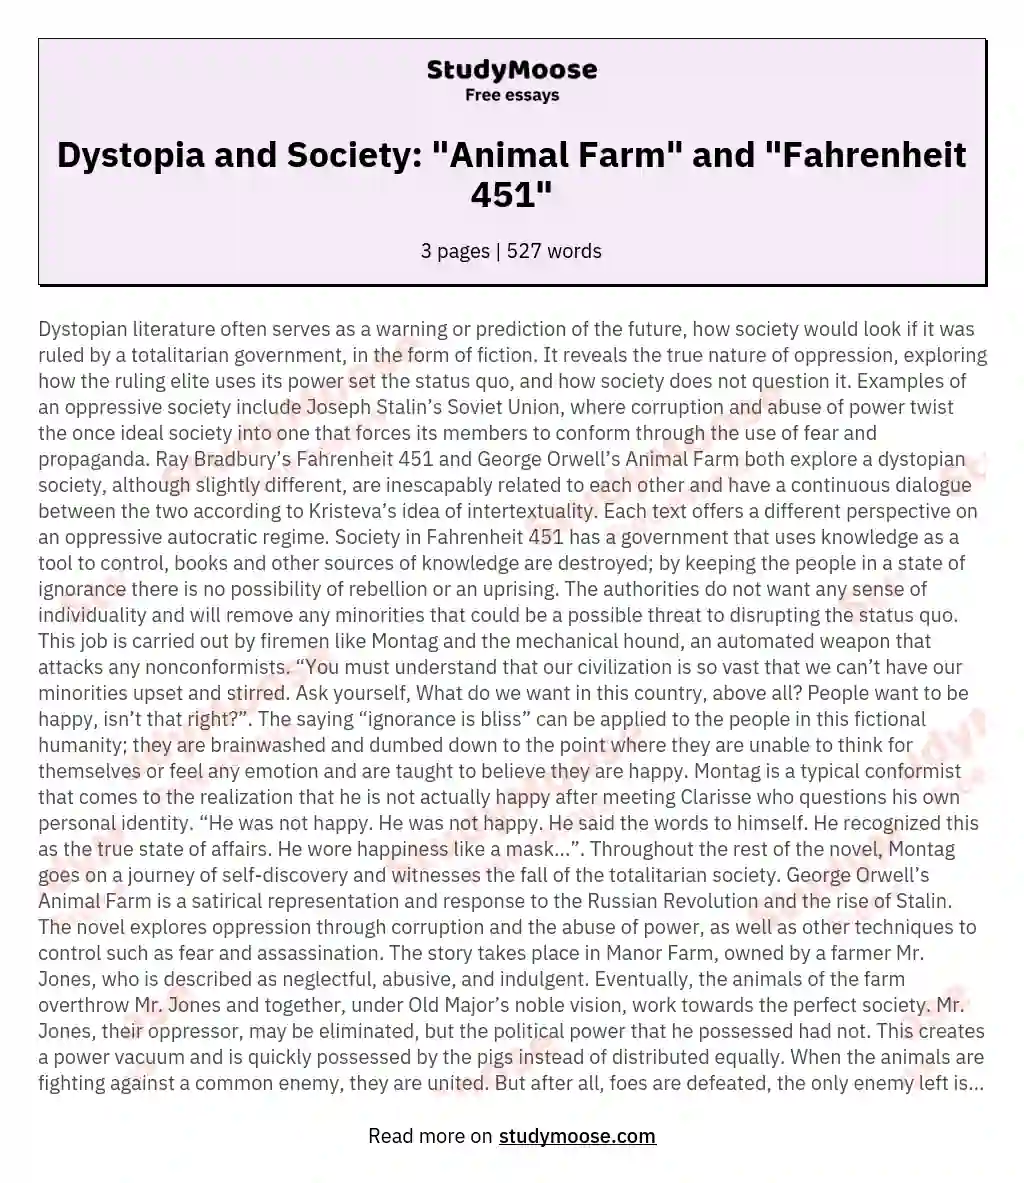 Dystopia and Society: "Animal Farm" and "Fahrenheit 451"